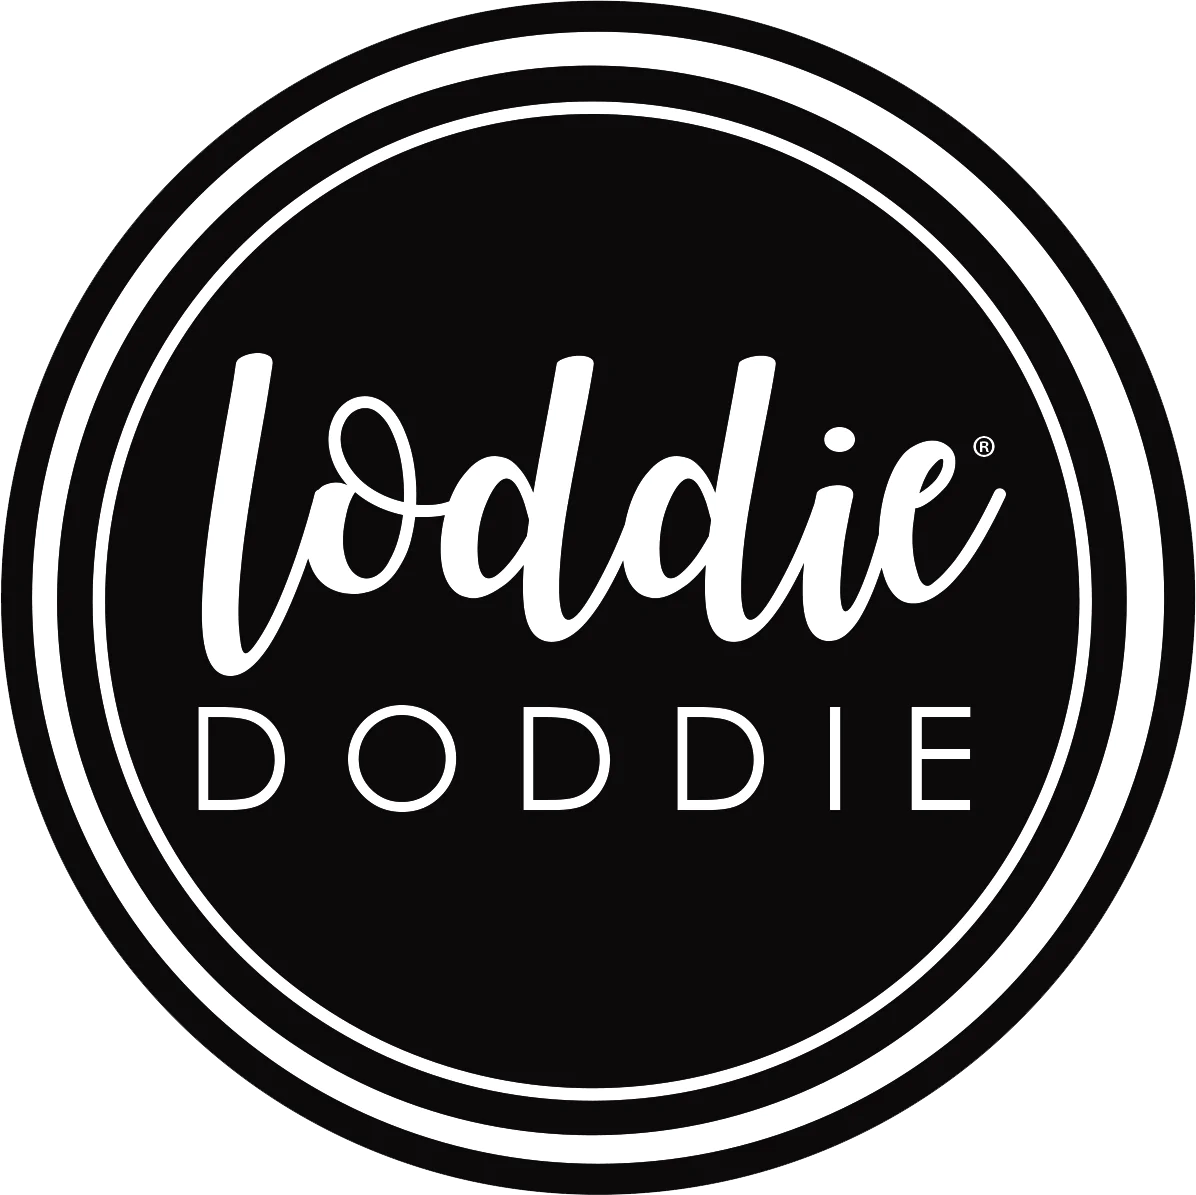 loddie doddie logo